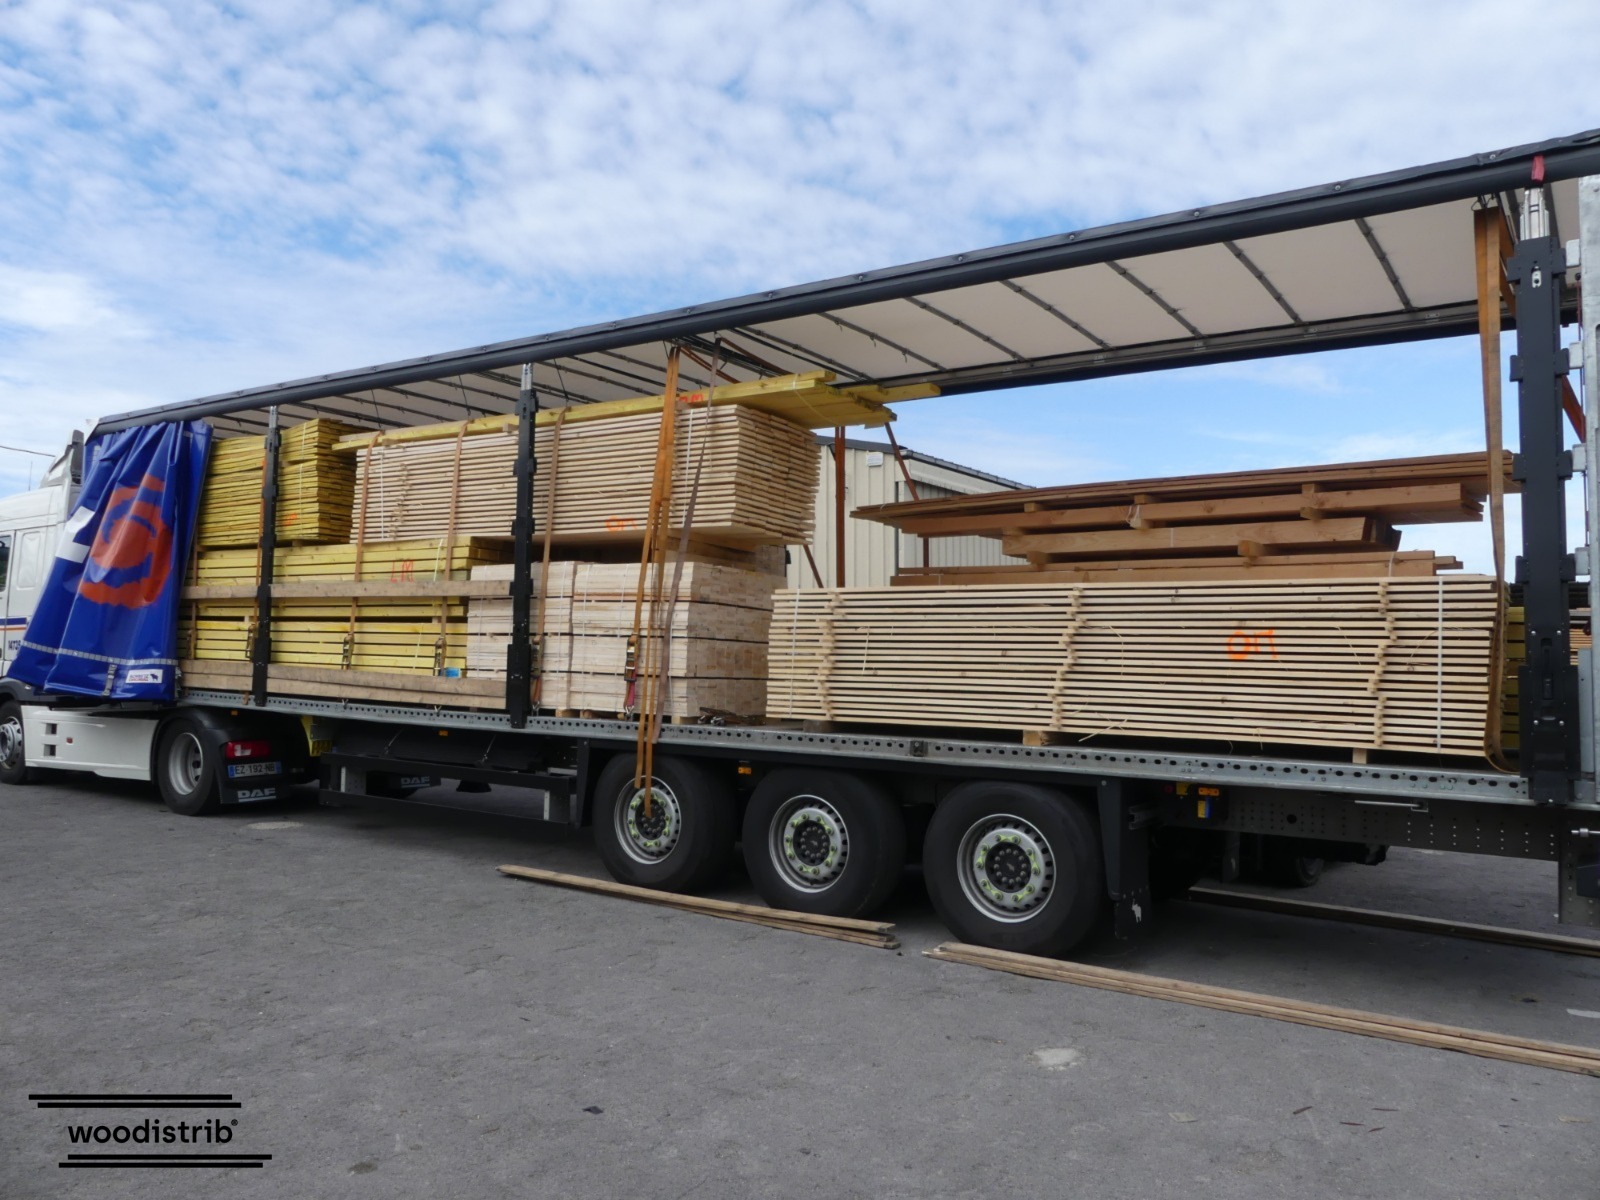 Camion de bois de construction Woodistrib